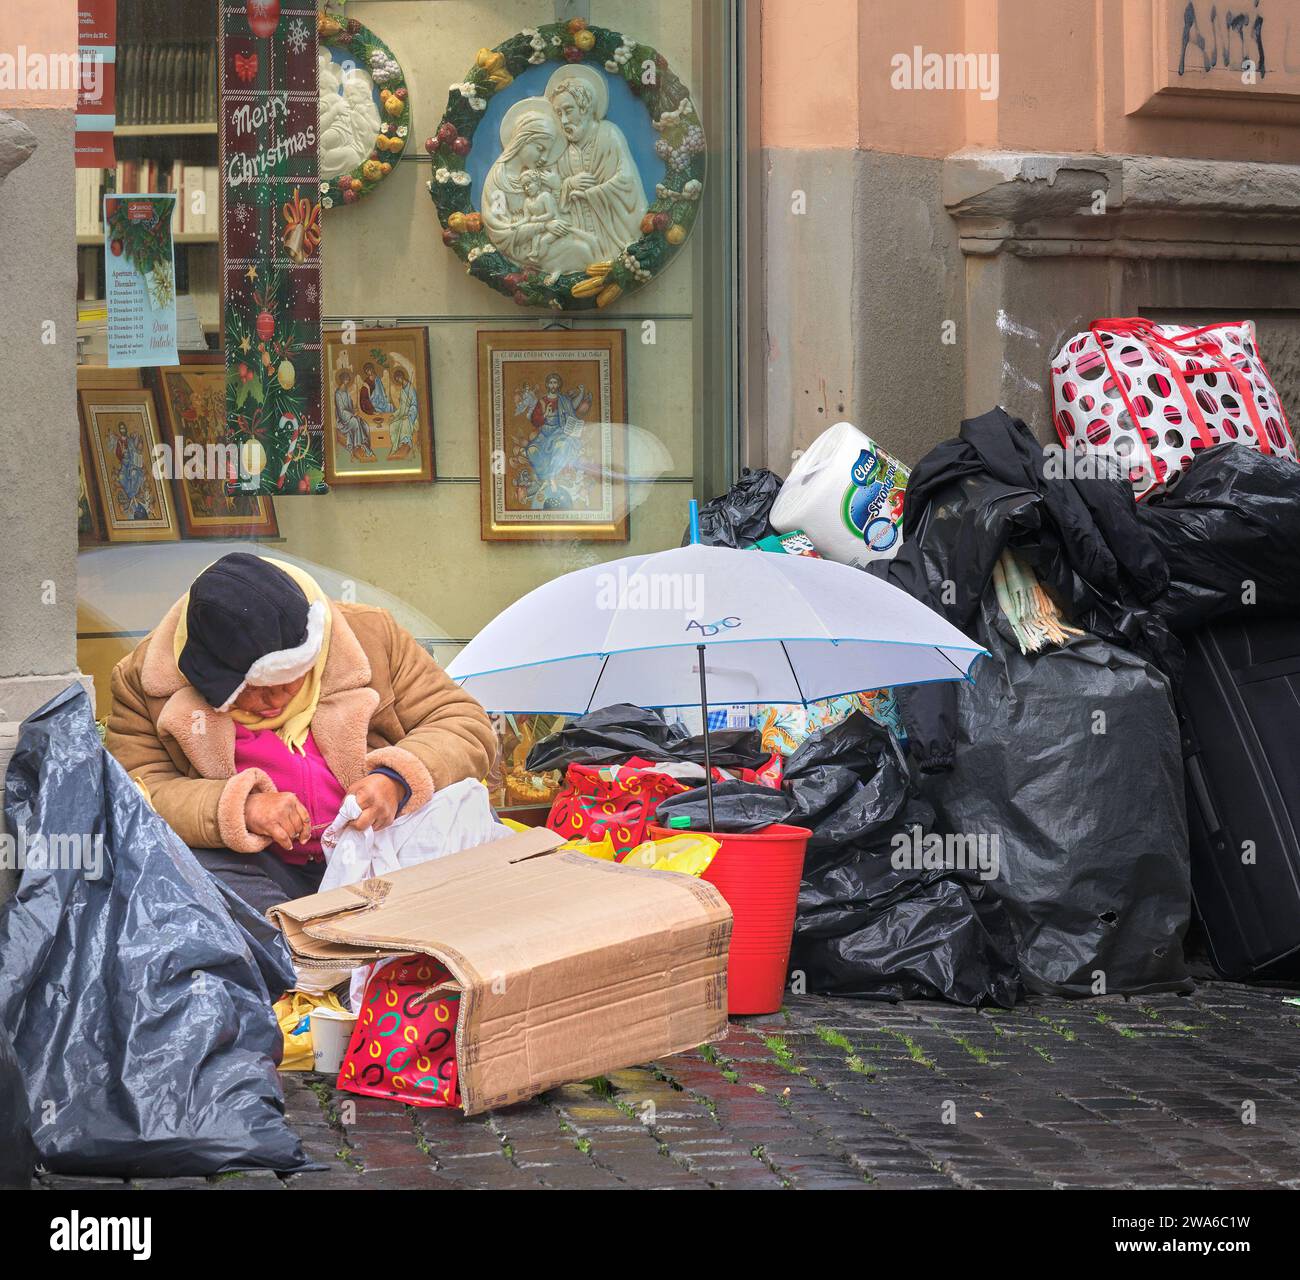 En bas et dehors à Rome ; une personne sans abri est assise avec ses possessions dans des sacs en plastique devant un magasin avec «Joyeux Noël», dans une rue de la cité du Vatican. Banque D'Images